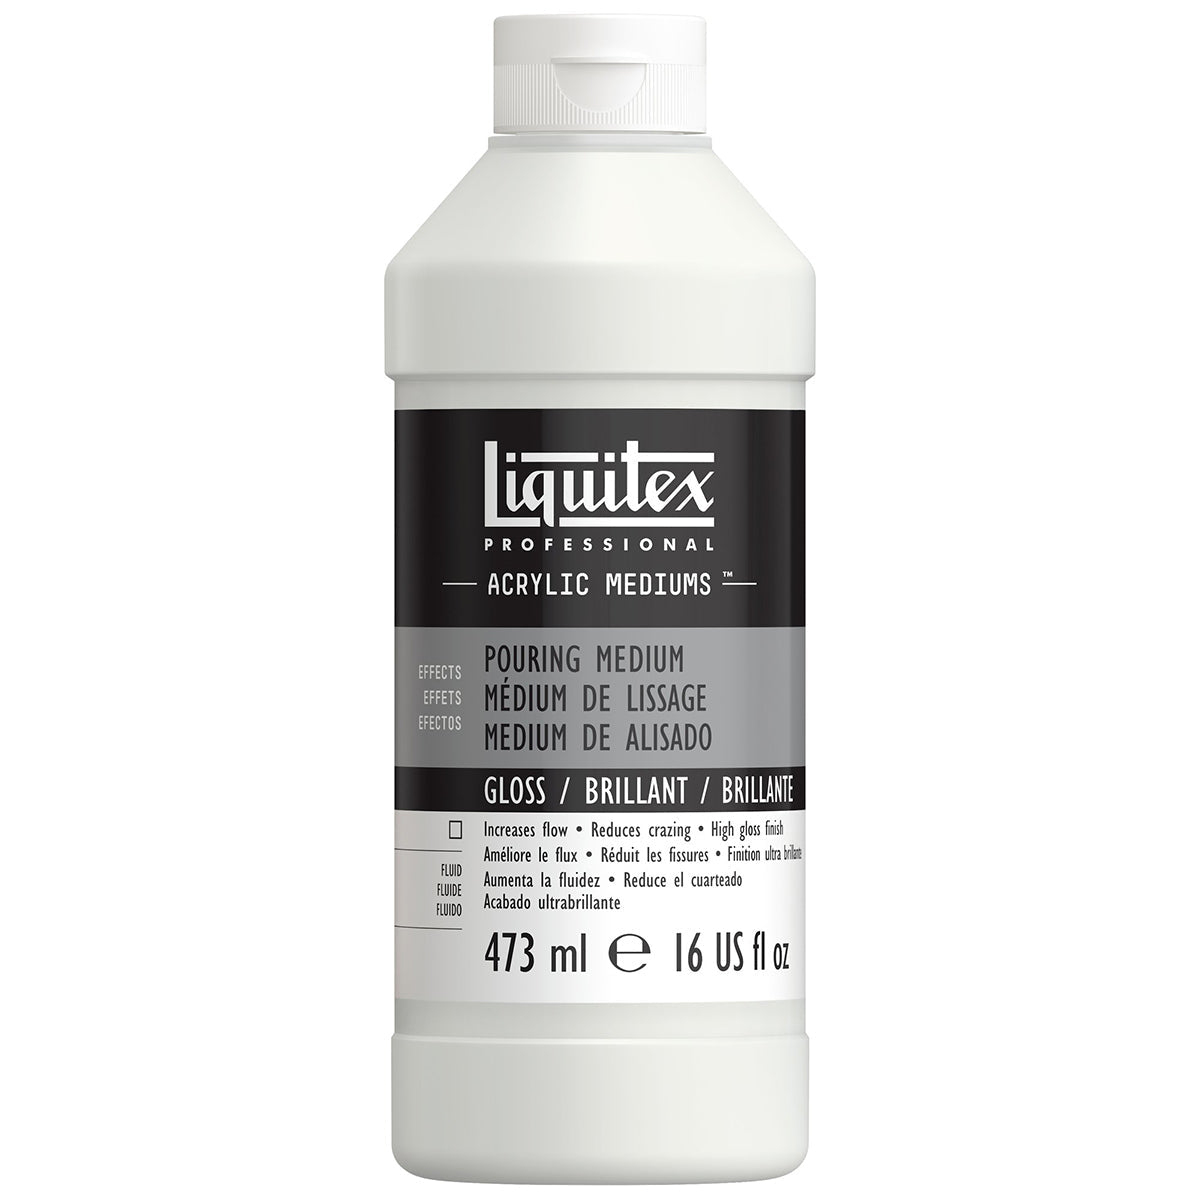 Liquitex - Pouring Medium Gloss Finish 473ml